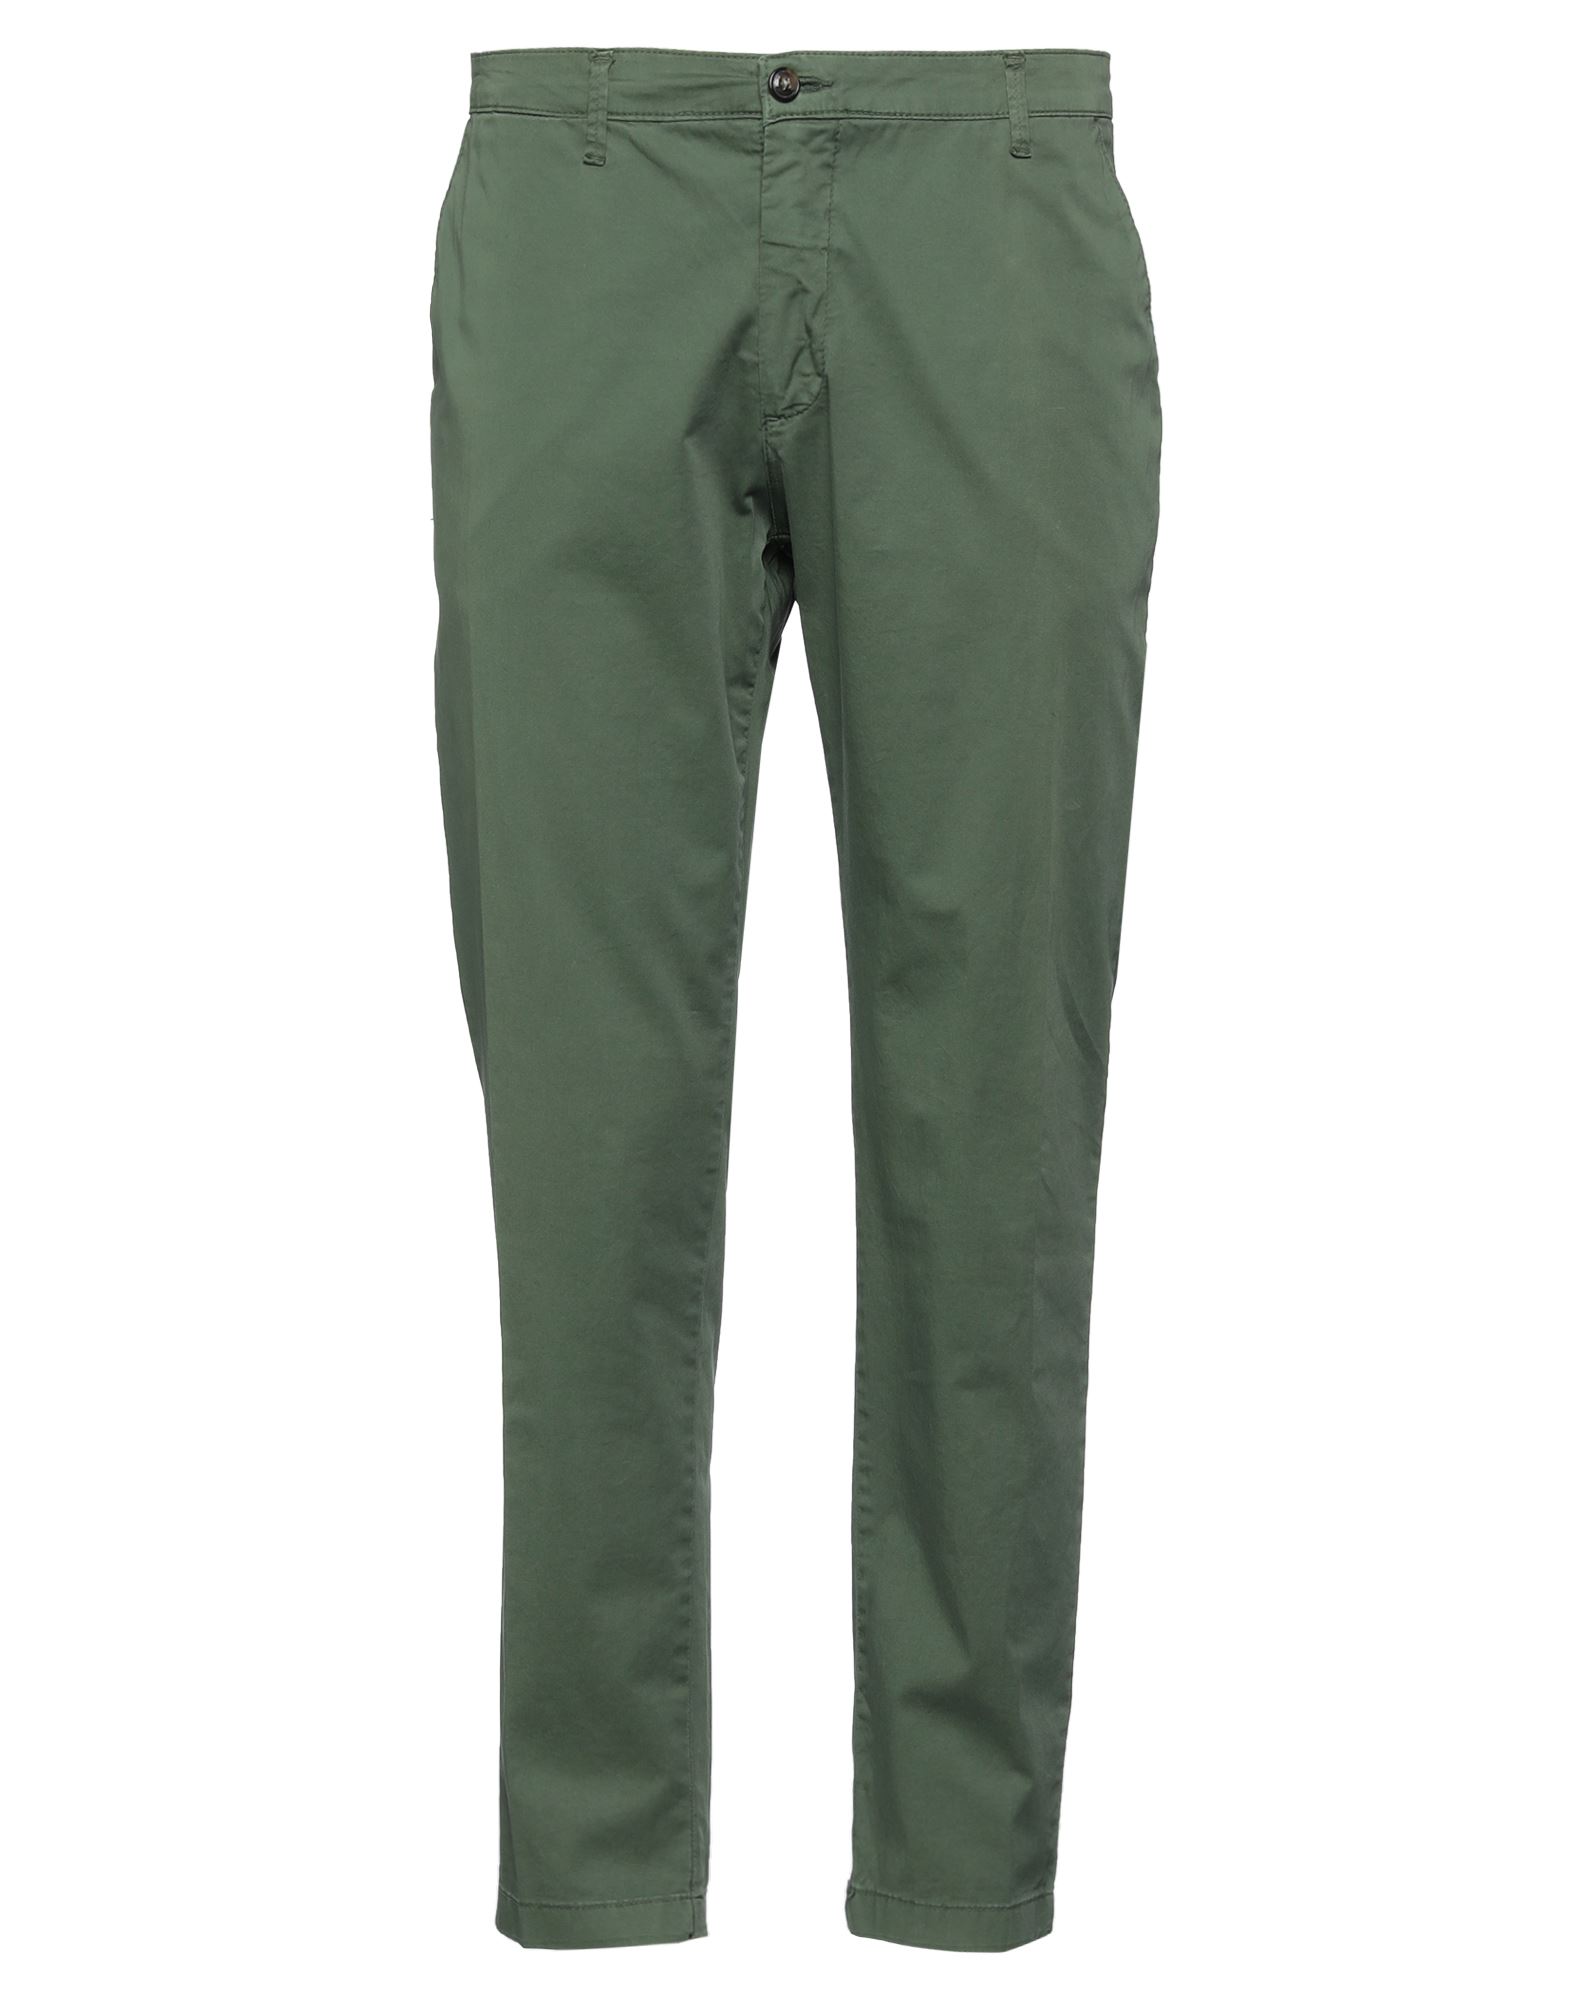 Shop Les Copains Man Pants Green Size 36 Cotton, Elastane